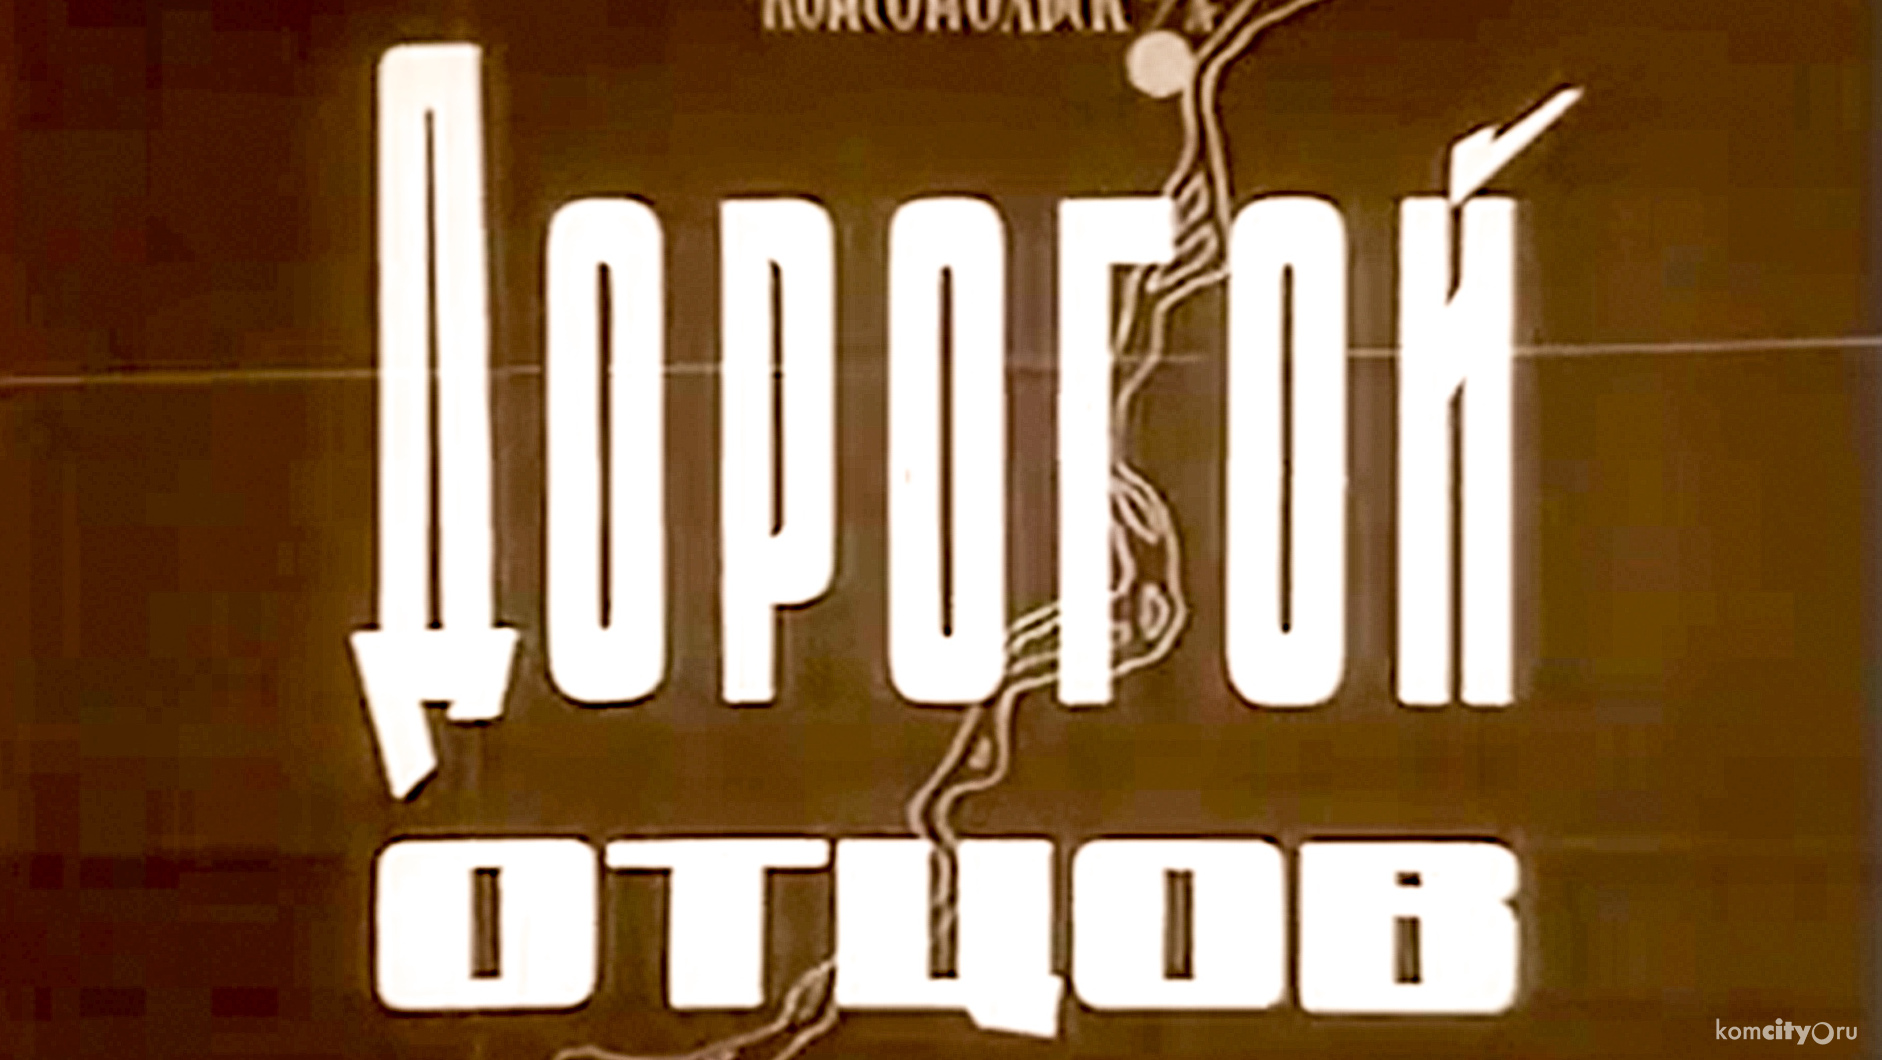 Опубликован архивный фильм, посвящённый ледовому переходу из Хабаровска в Комсомольск